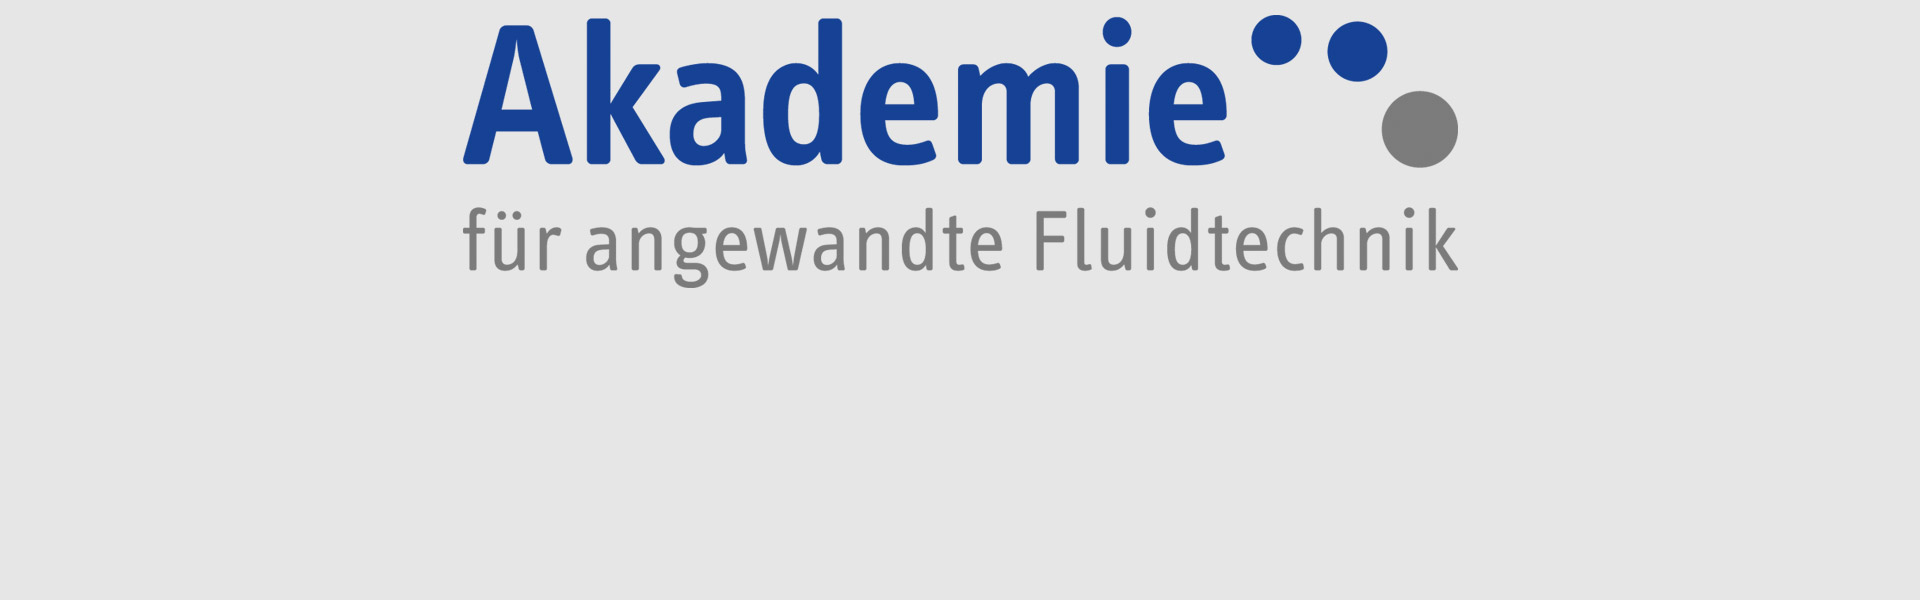 Academy til anvandt fluidteknik GmbH + Co. KG